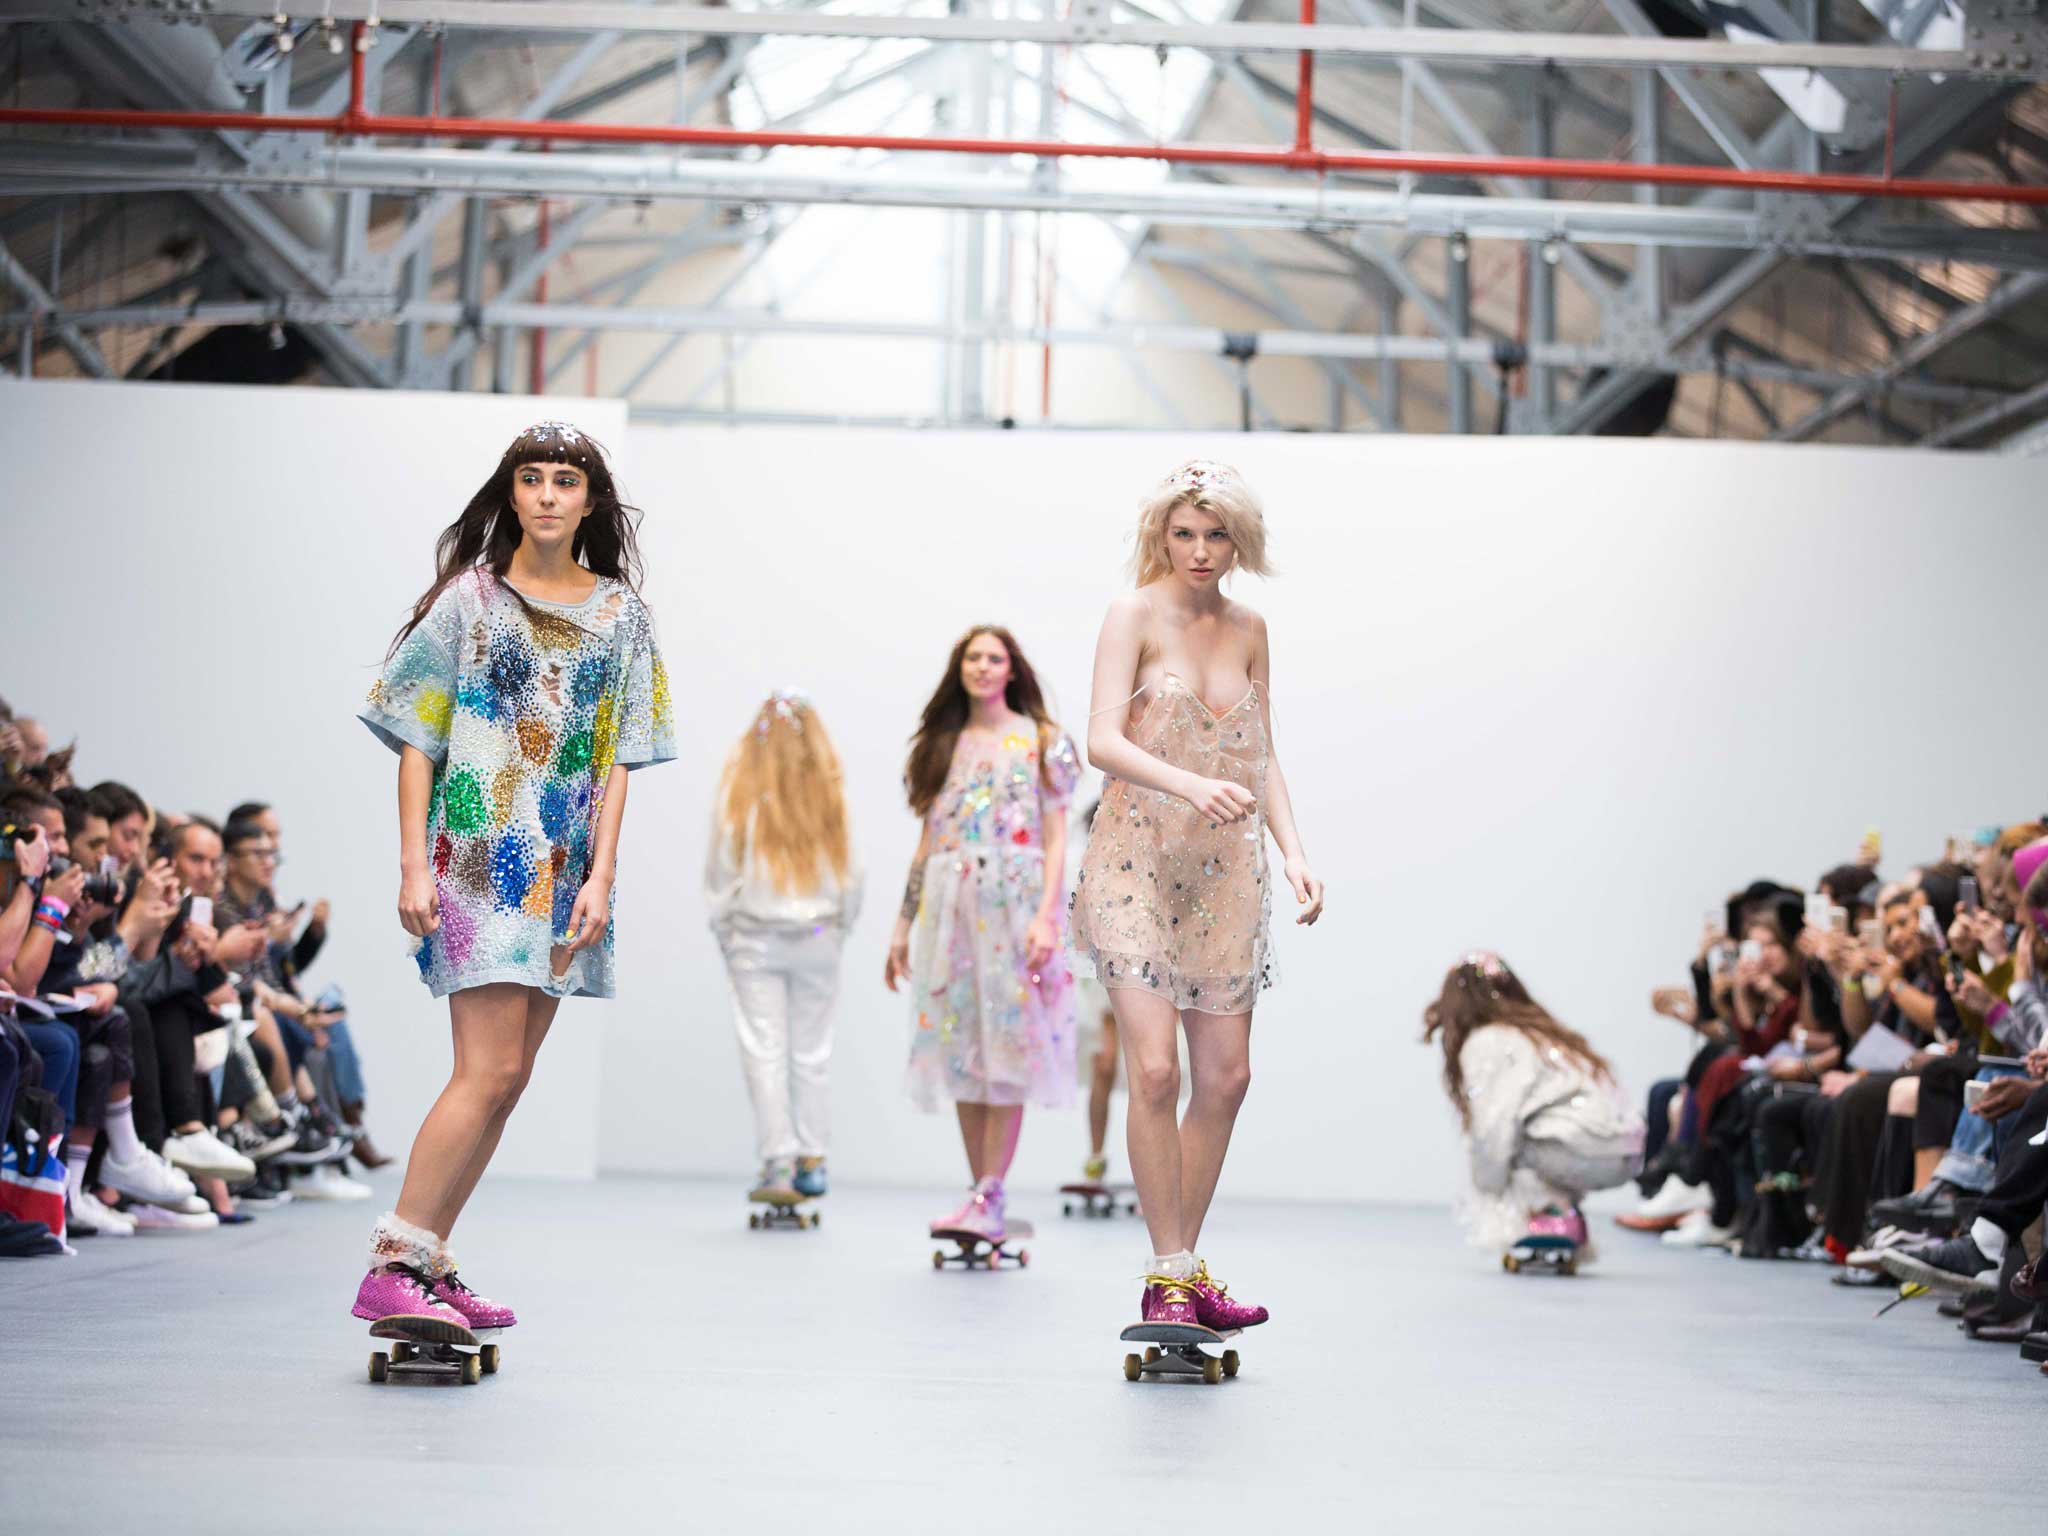 Models skate down the runway at London Fashion Week